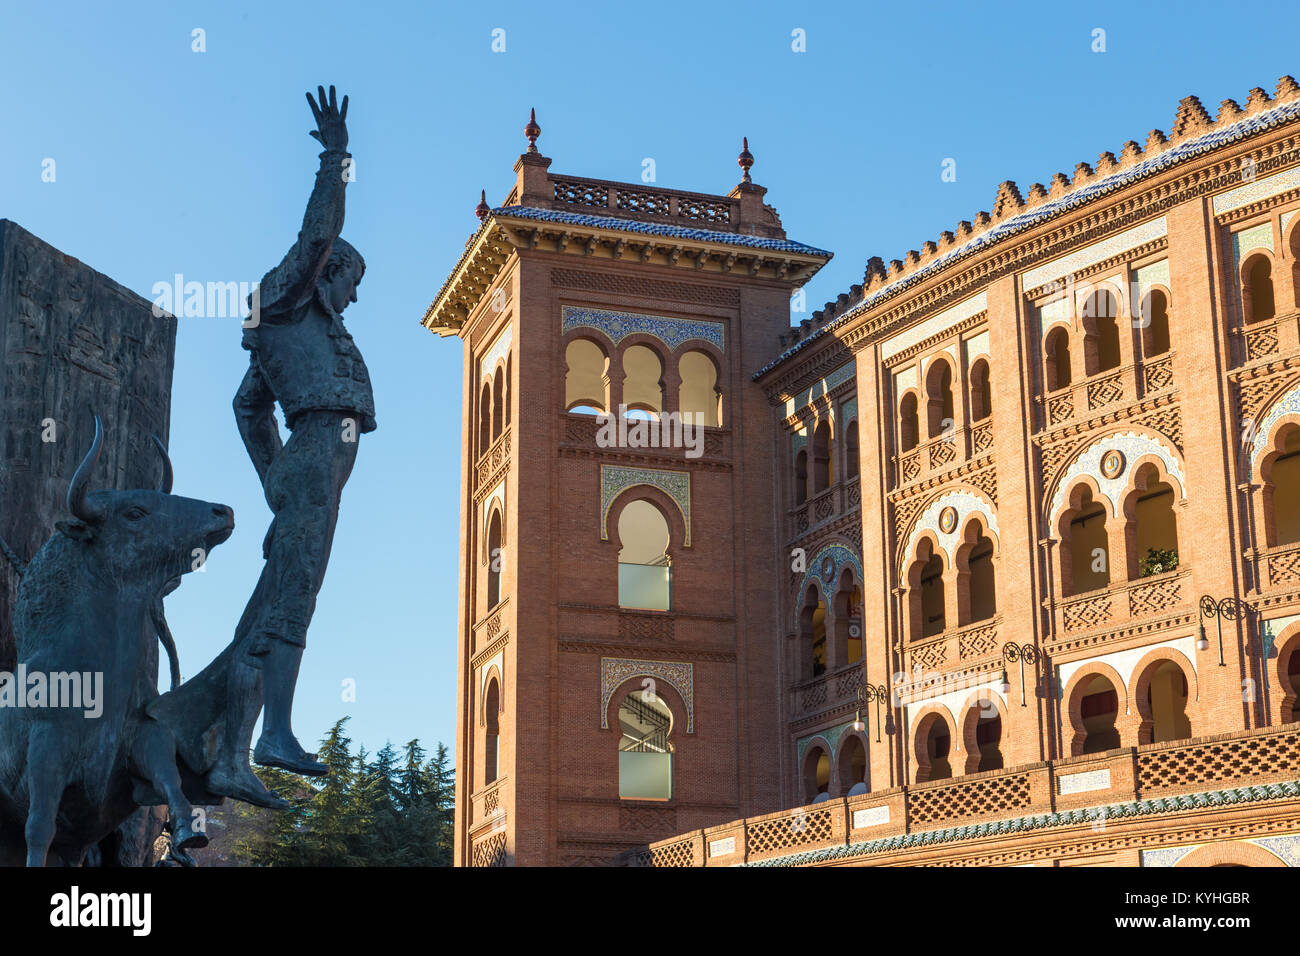 Bullfighter sculpture in front of Bullfighting arena Plaza de Toros de Las Ventas in Madrid, Spain. Stock Photo